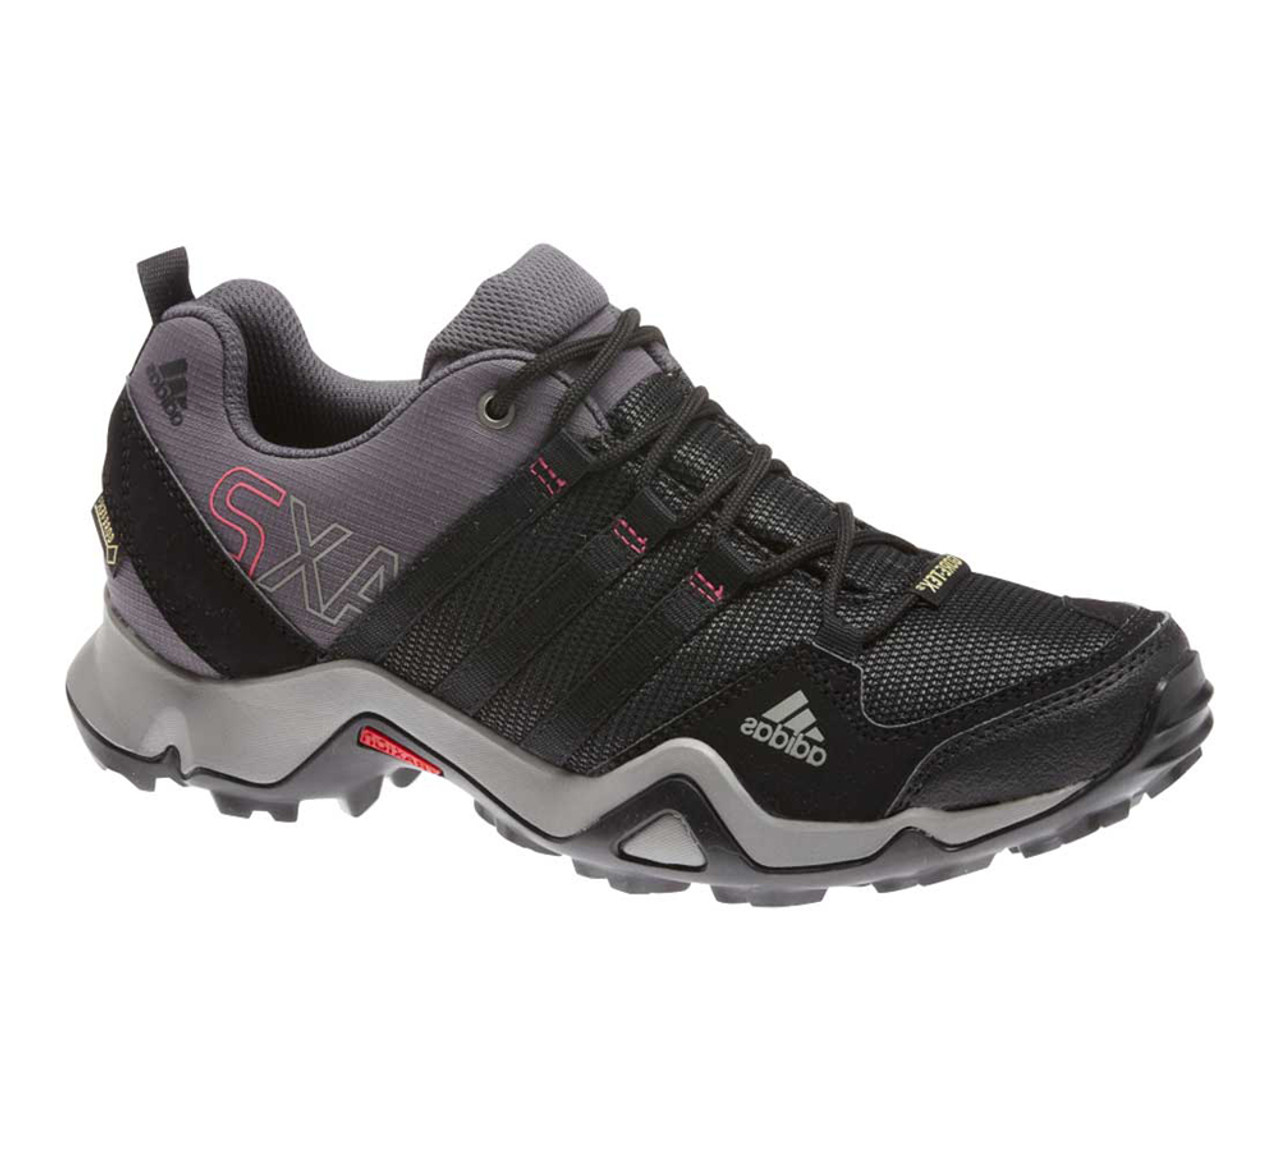 Adidas Women's Ax 2 GTX Hiking Shoe Black | Discount Ladies Athletic Shoe & More - Shoolu.com | Shoolu.com